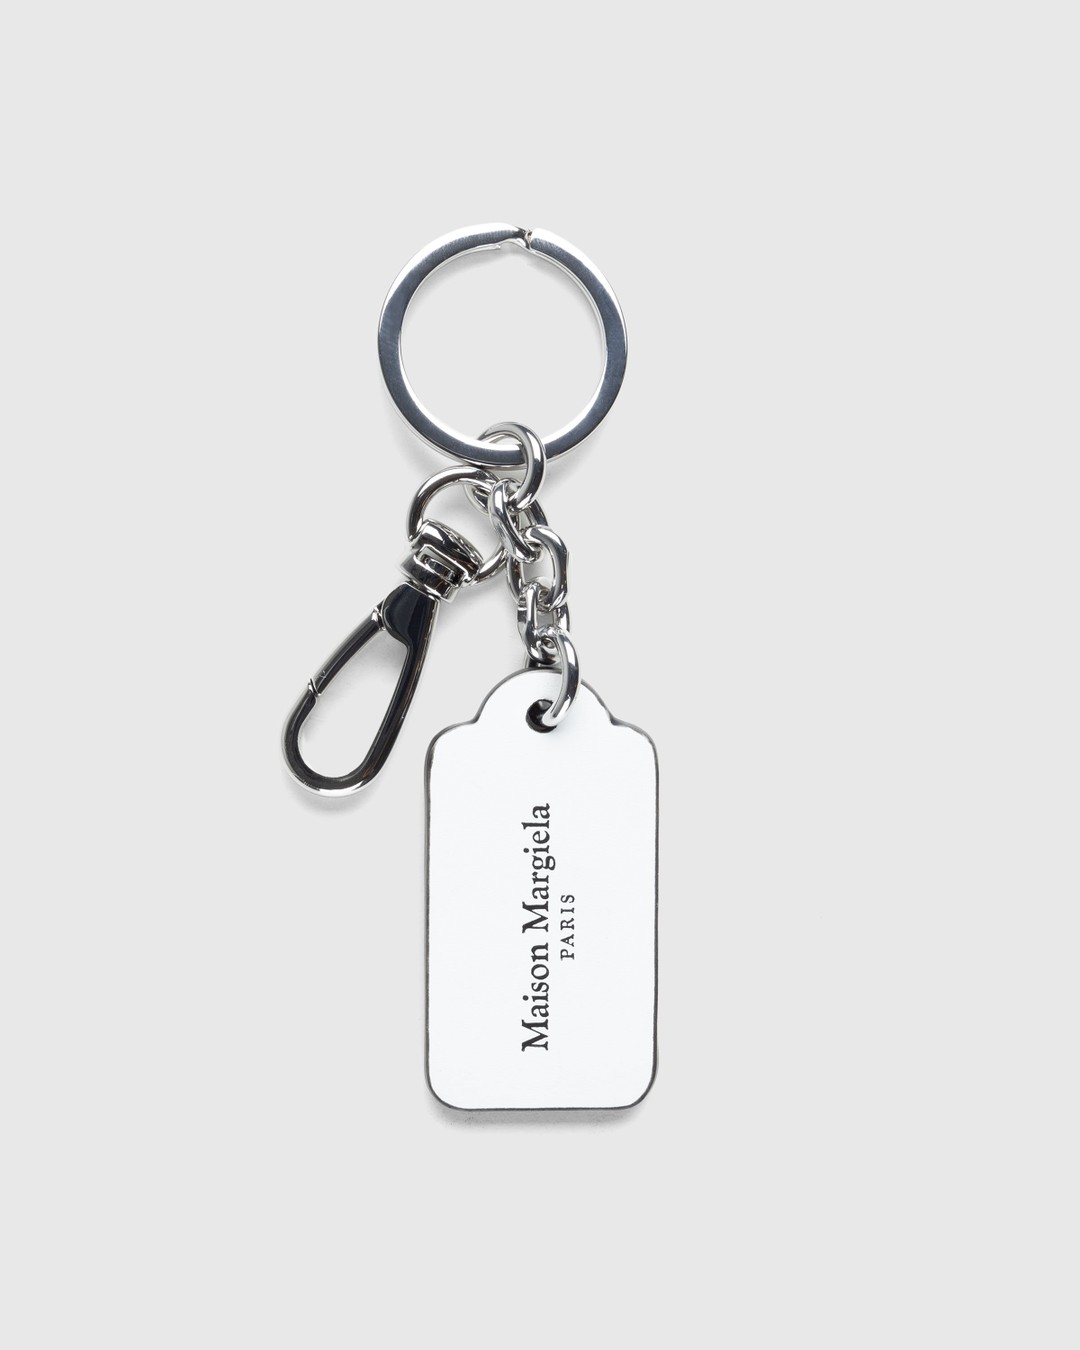 Maison Margiela – Four Stitches Key Ring Black/White - Keychains - Black - Image 1